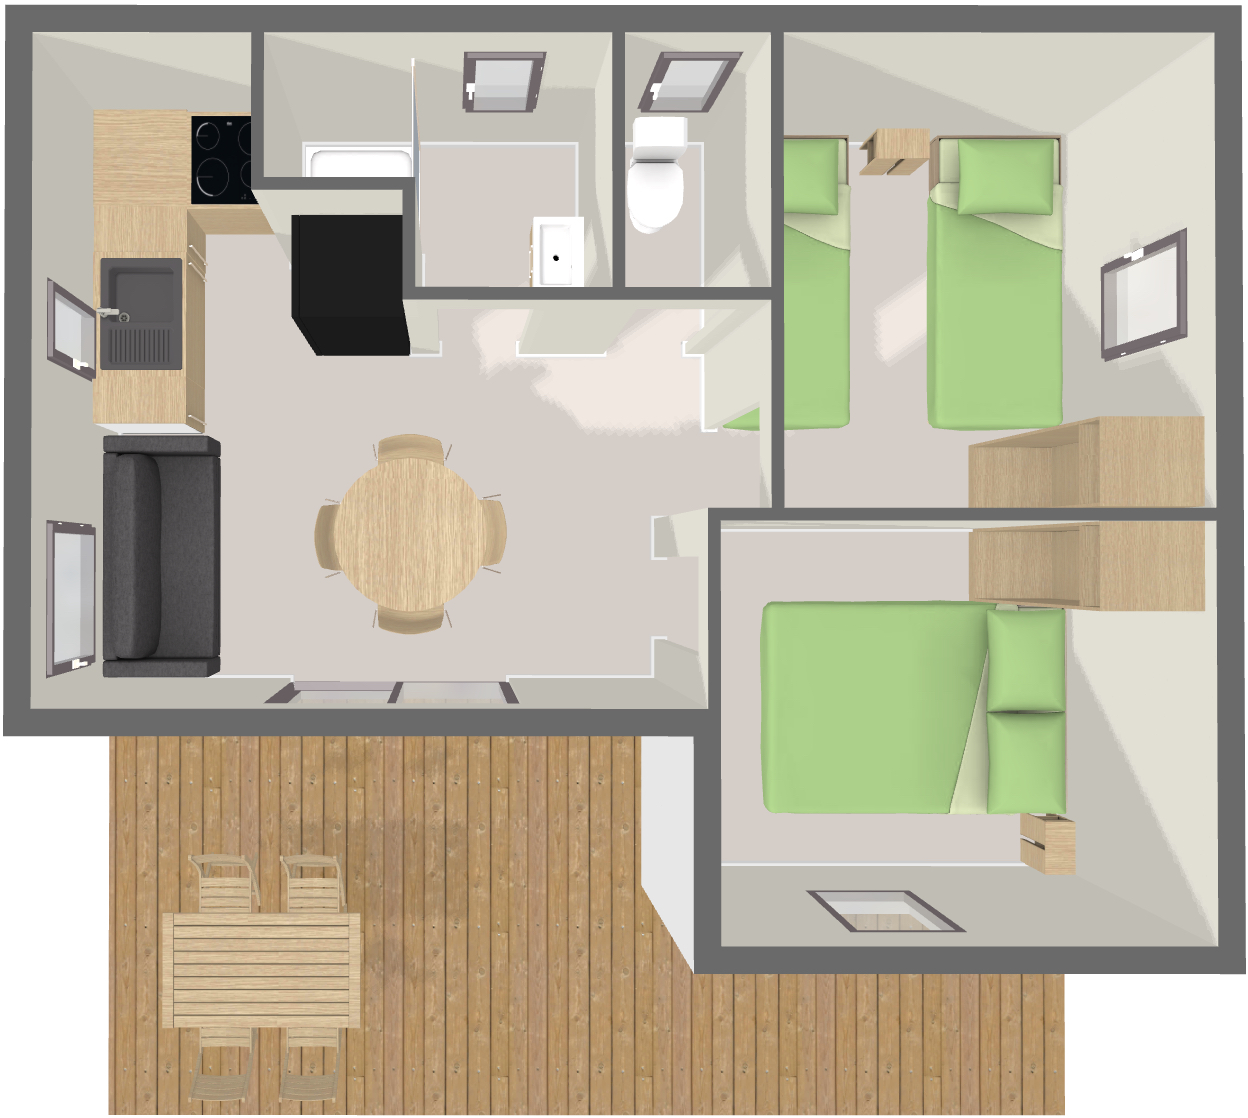 Voir le plan Chalet Premium 39 m² (2 chambres - 4 pers)